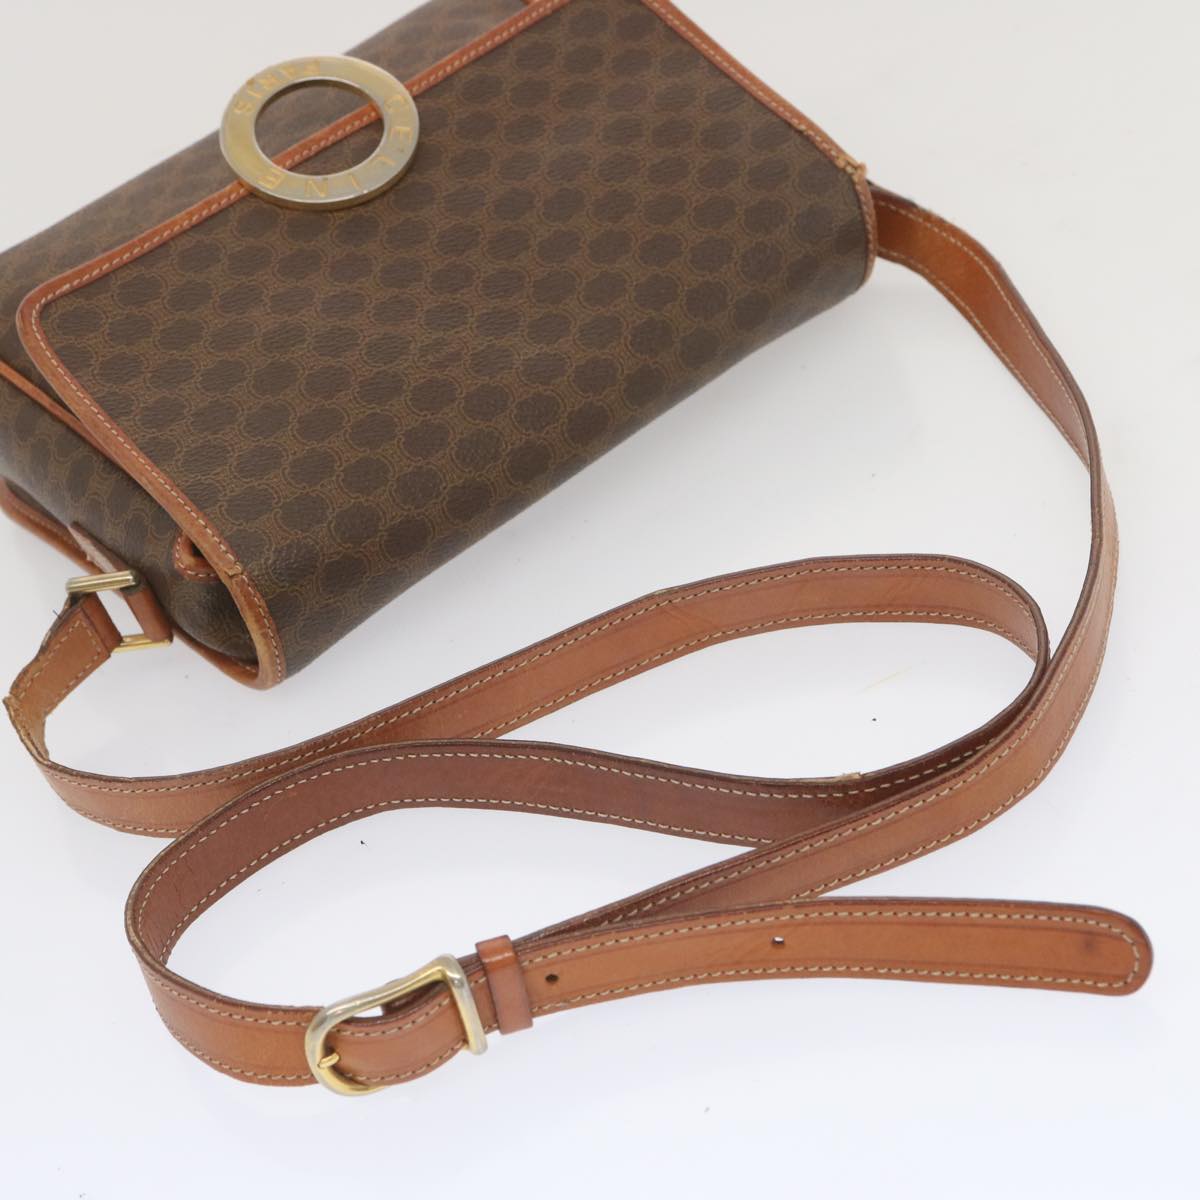 CELINE Macadam Canvas Shoulder Bag PVC Leather Brown Auth 68506